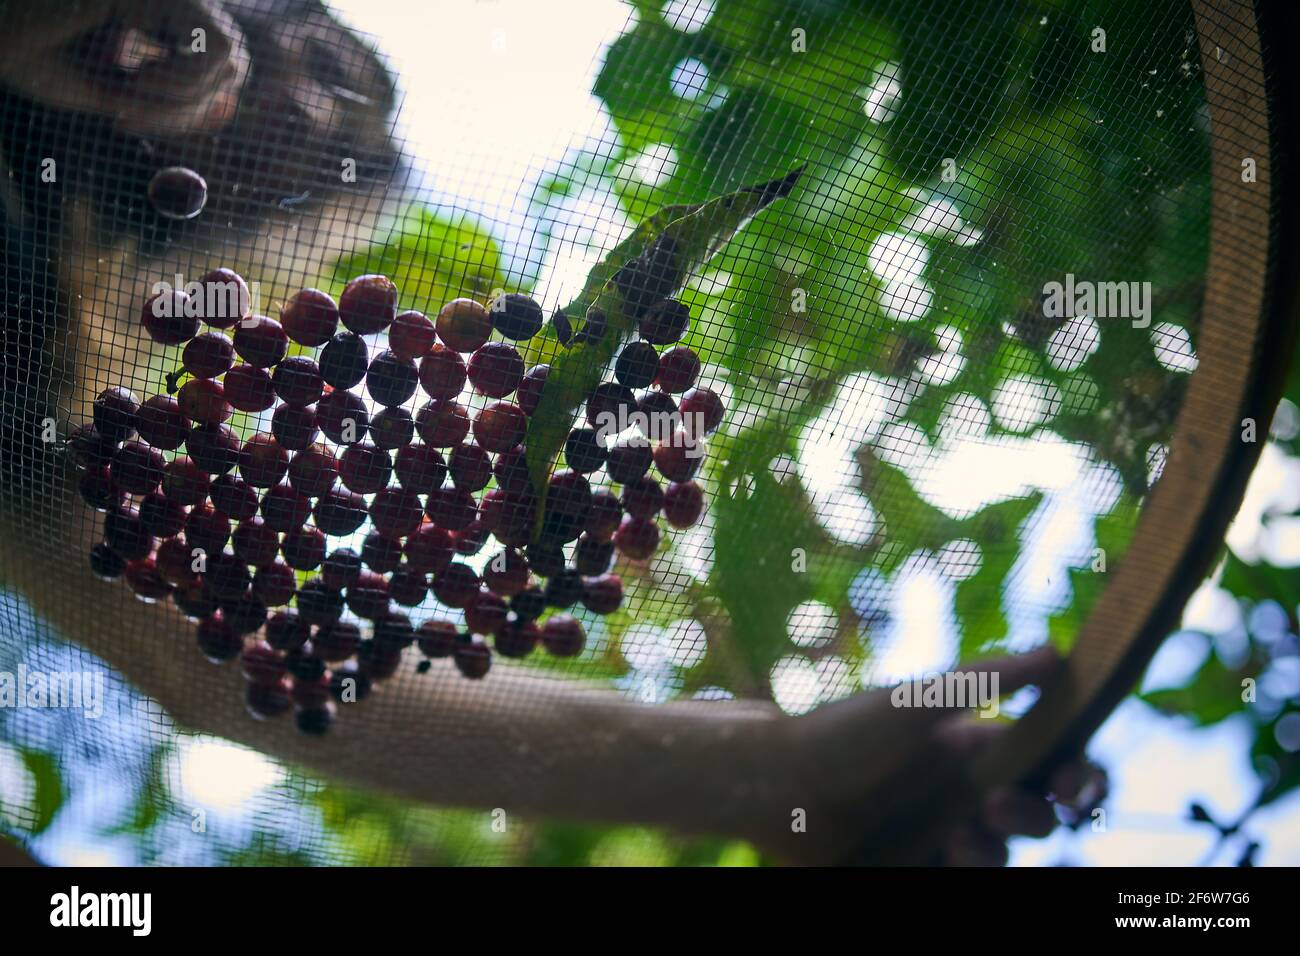 Franca, Brasilien. April 2021. Arabica-Kaffeebohnen, die am 1. April selektiv auf einem speziellen Bio-Bauernhof in Franca, Region Alta Mogiana, Sao Paulo, Brasilien, geerntet werden, 2021. (Foto: Igor do Valle/Sipa USA) Quelle: SIPA USA/Alamy Live News Stockfoto